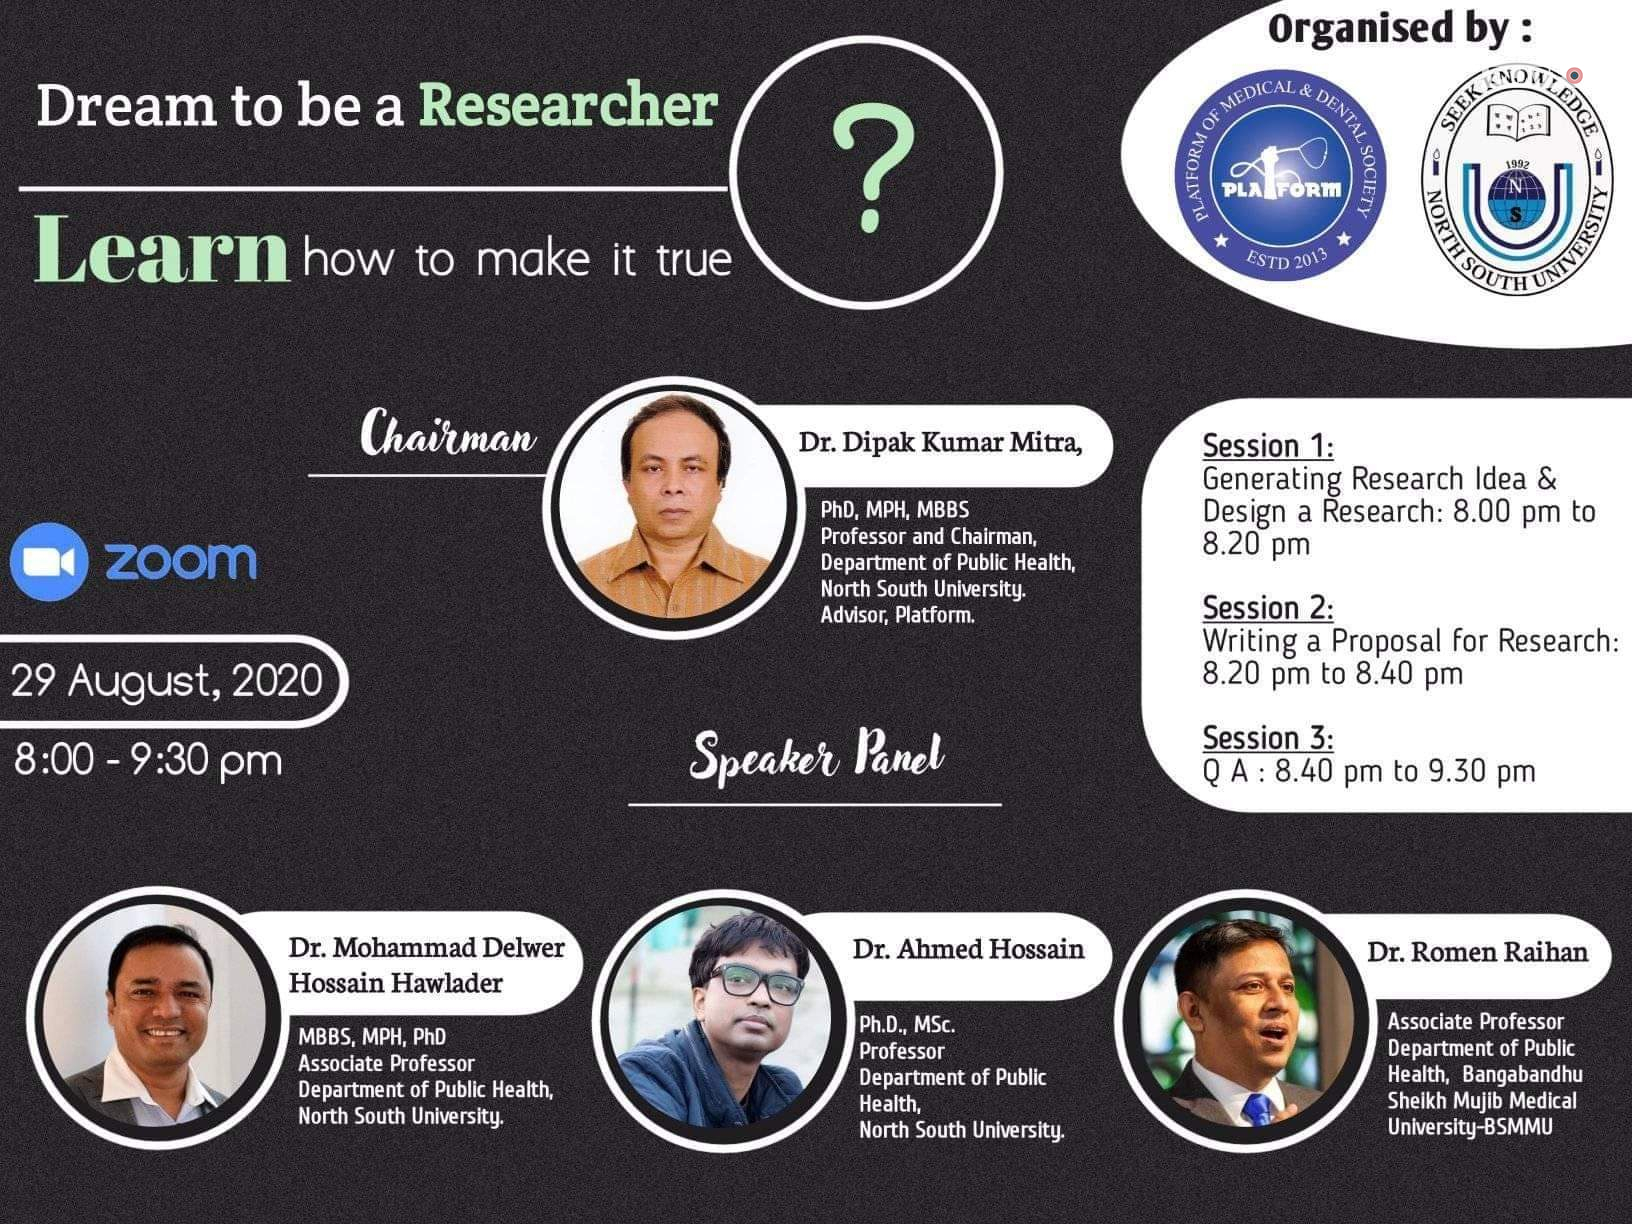 প্ল্যাটফর্ম ও নর্থ সাউথ বিশ্ববিদ্যালয়ের যৌথ উদ্যোগে ওয়েবিনার: “Dream to be a Researcher”